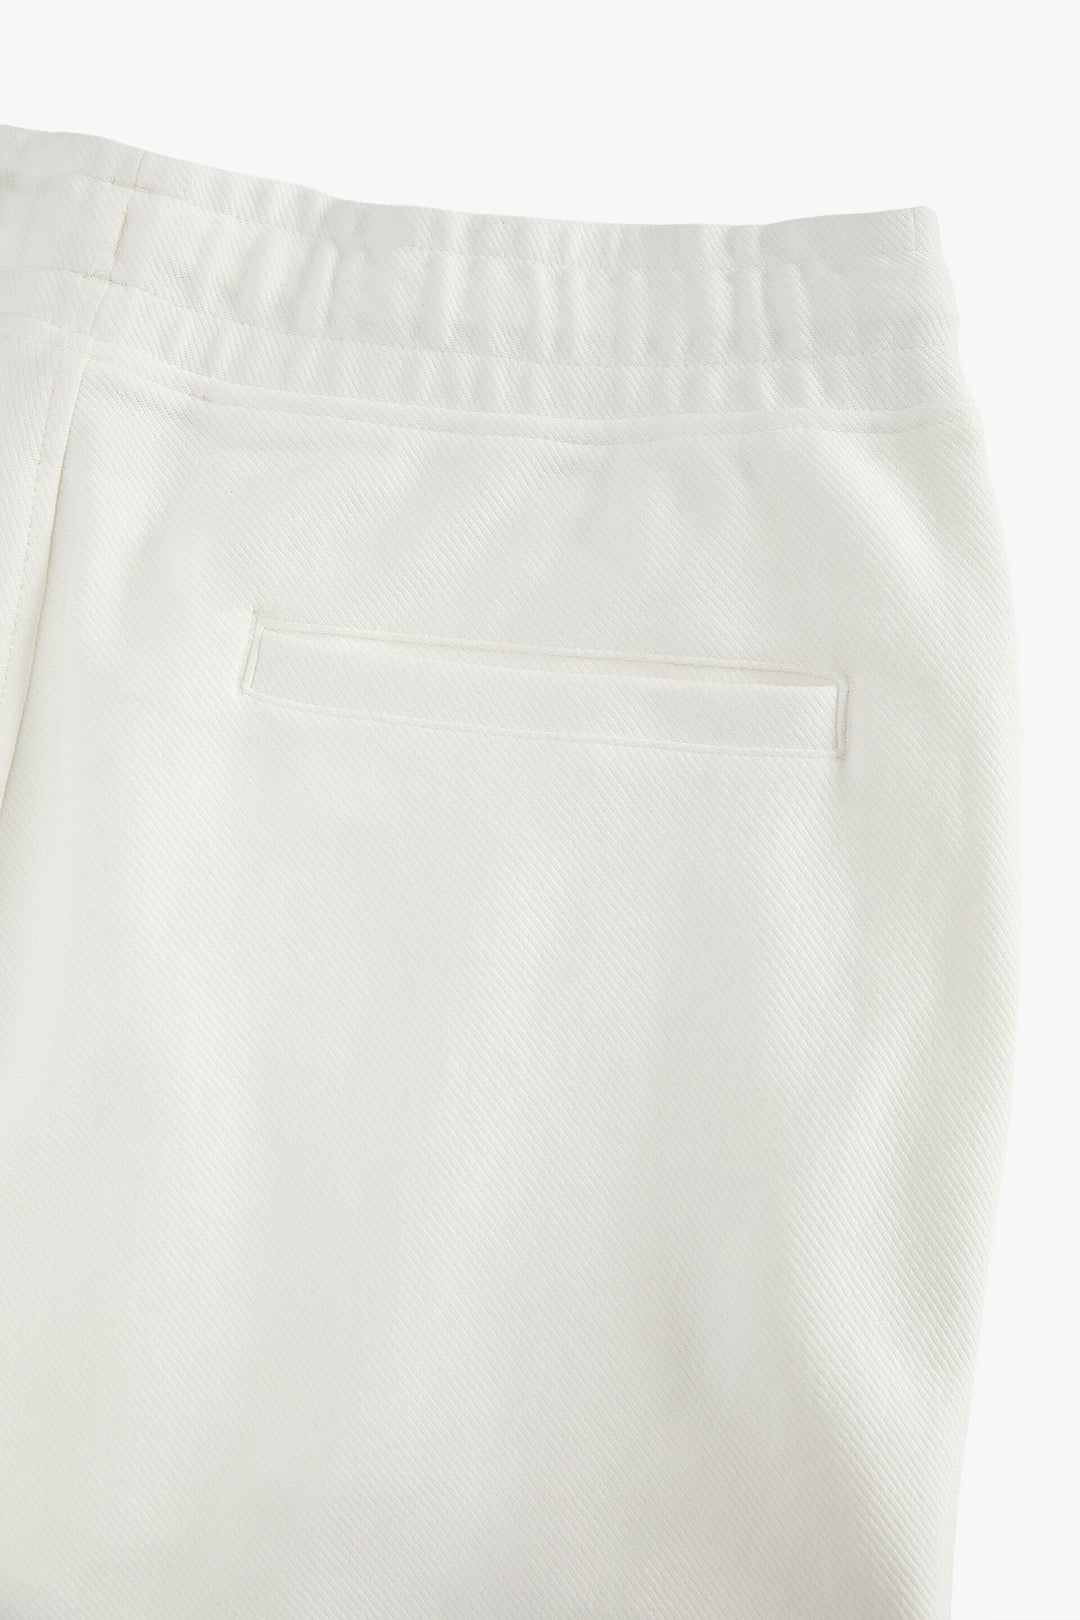 ZaraMan Knitted Jogg Cotton Trouser 1104/310/251